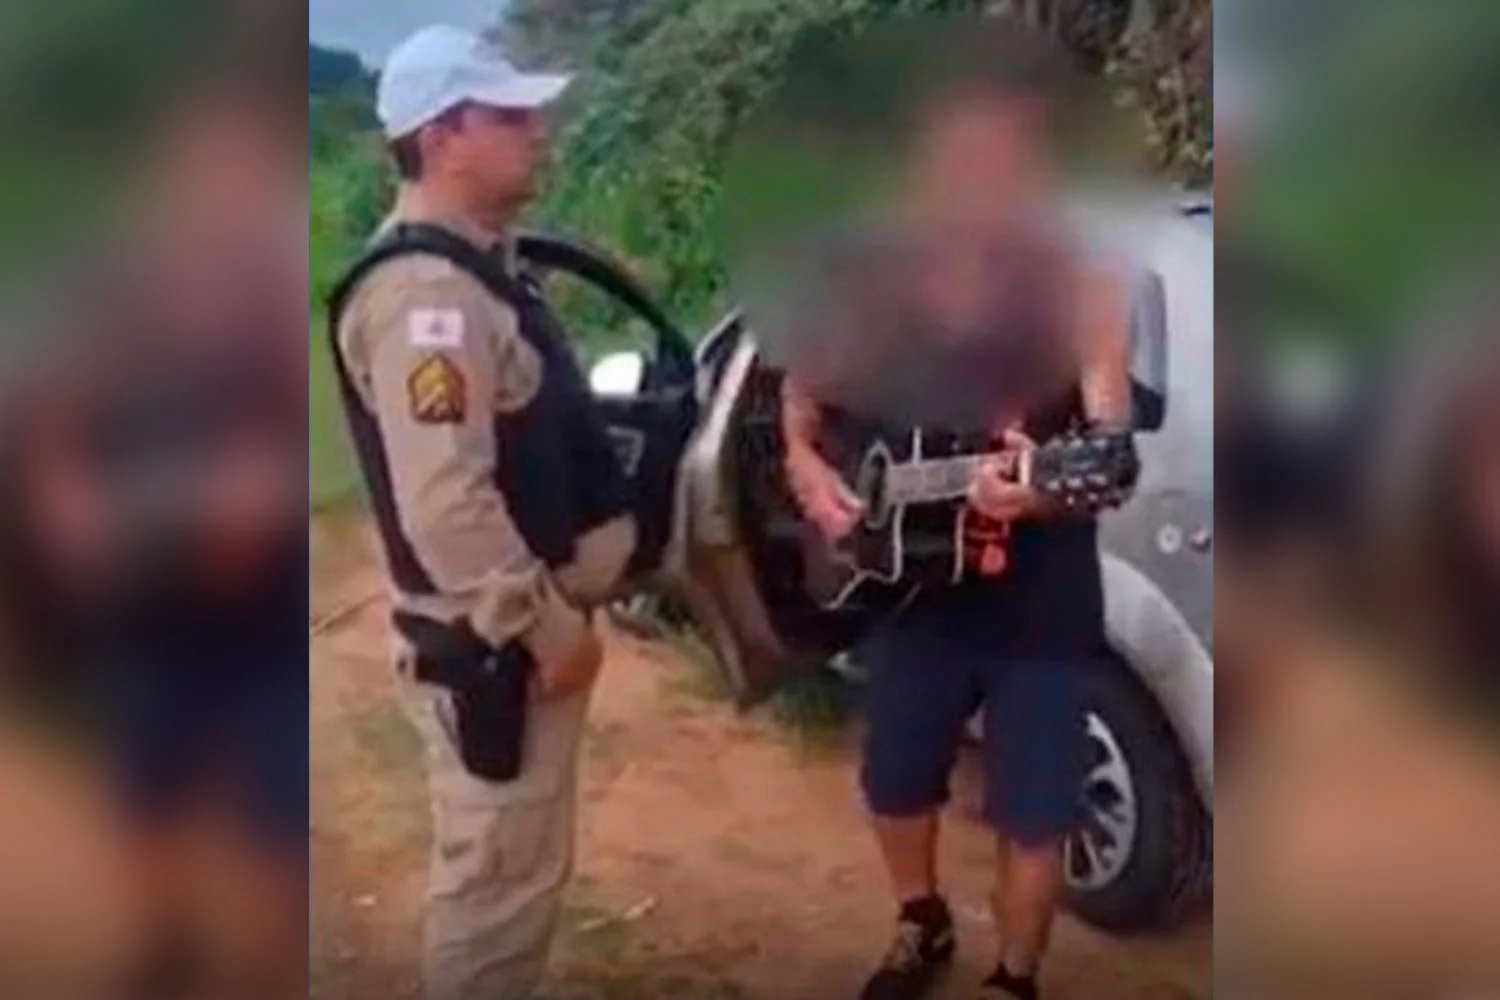 Vídeo: Embriagado, motorista canta para policial: “Seu guarda eu não sou vagabundo, eu não sou delenquente, sou um cara carente”